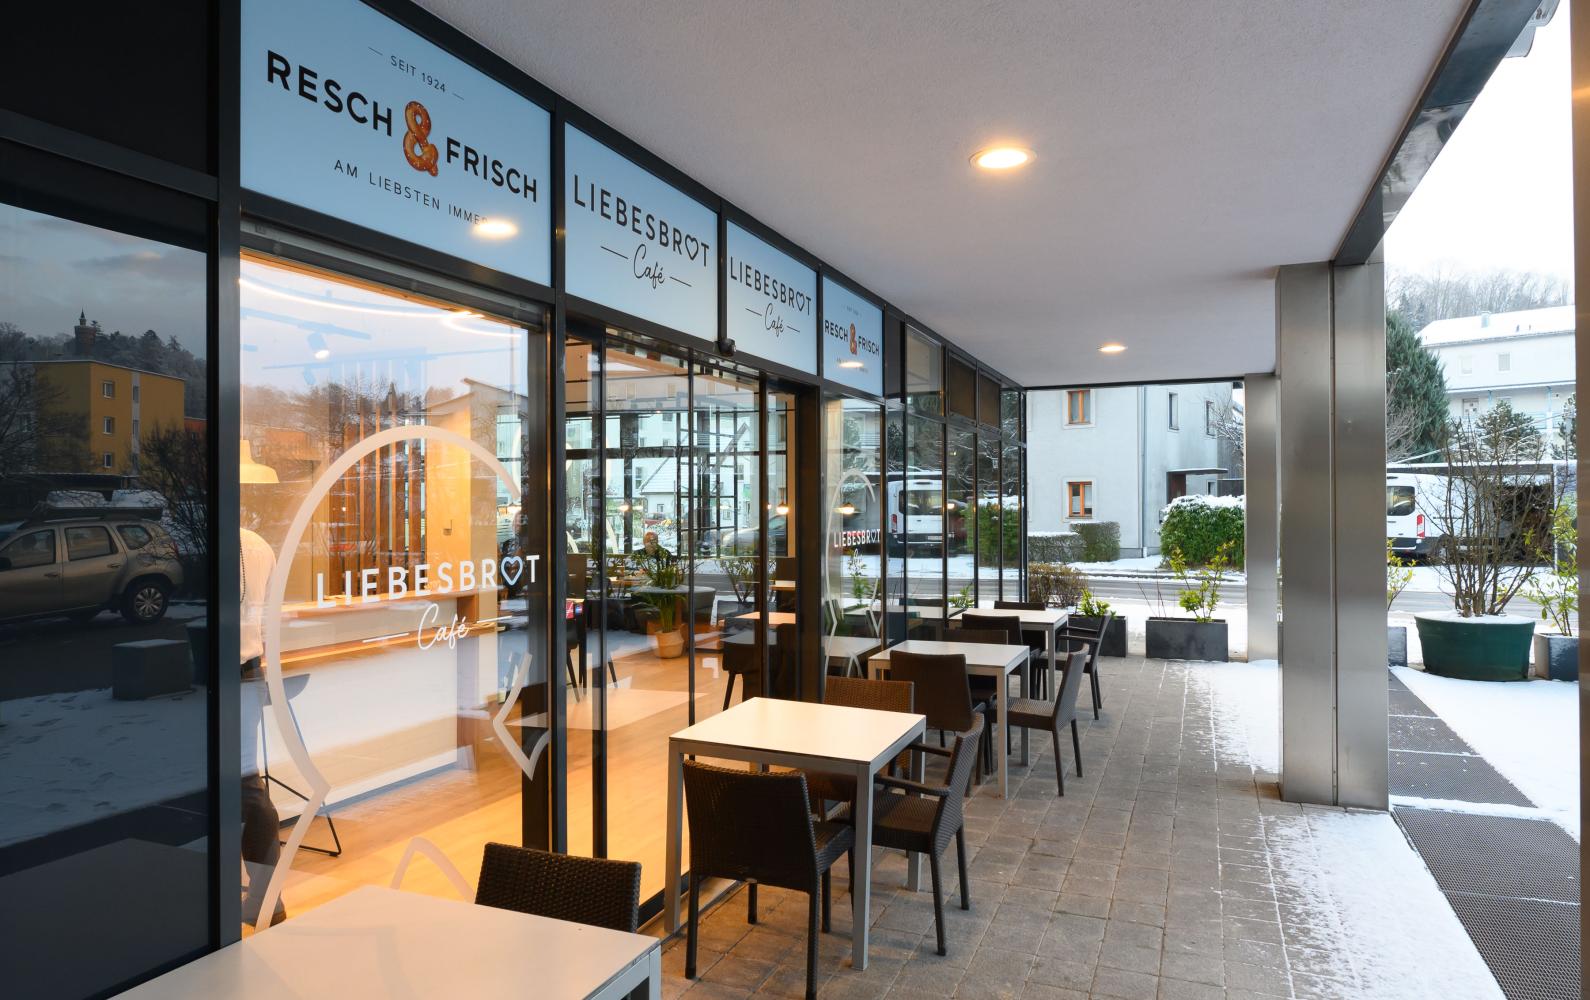 Resch&Frisch Filiale Thalheim Liebesbrot Café Headerbild